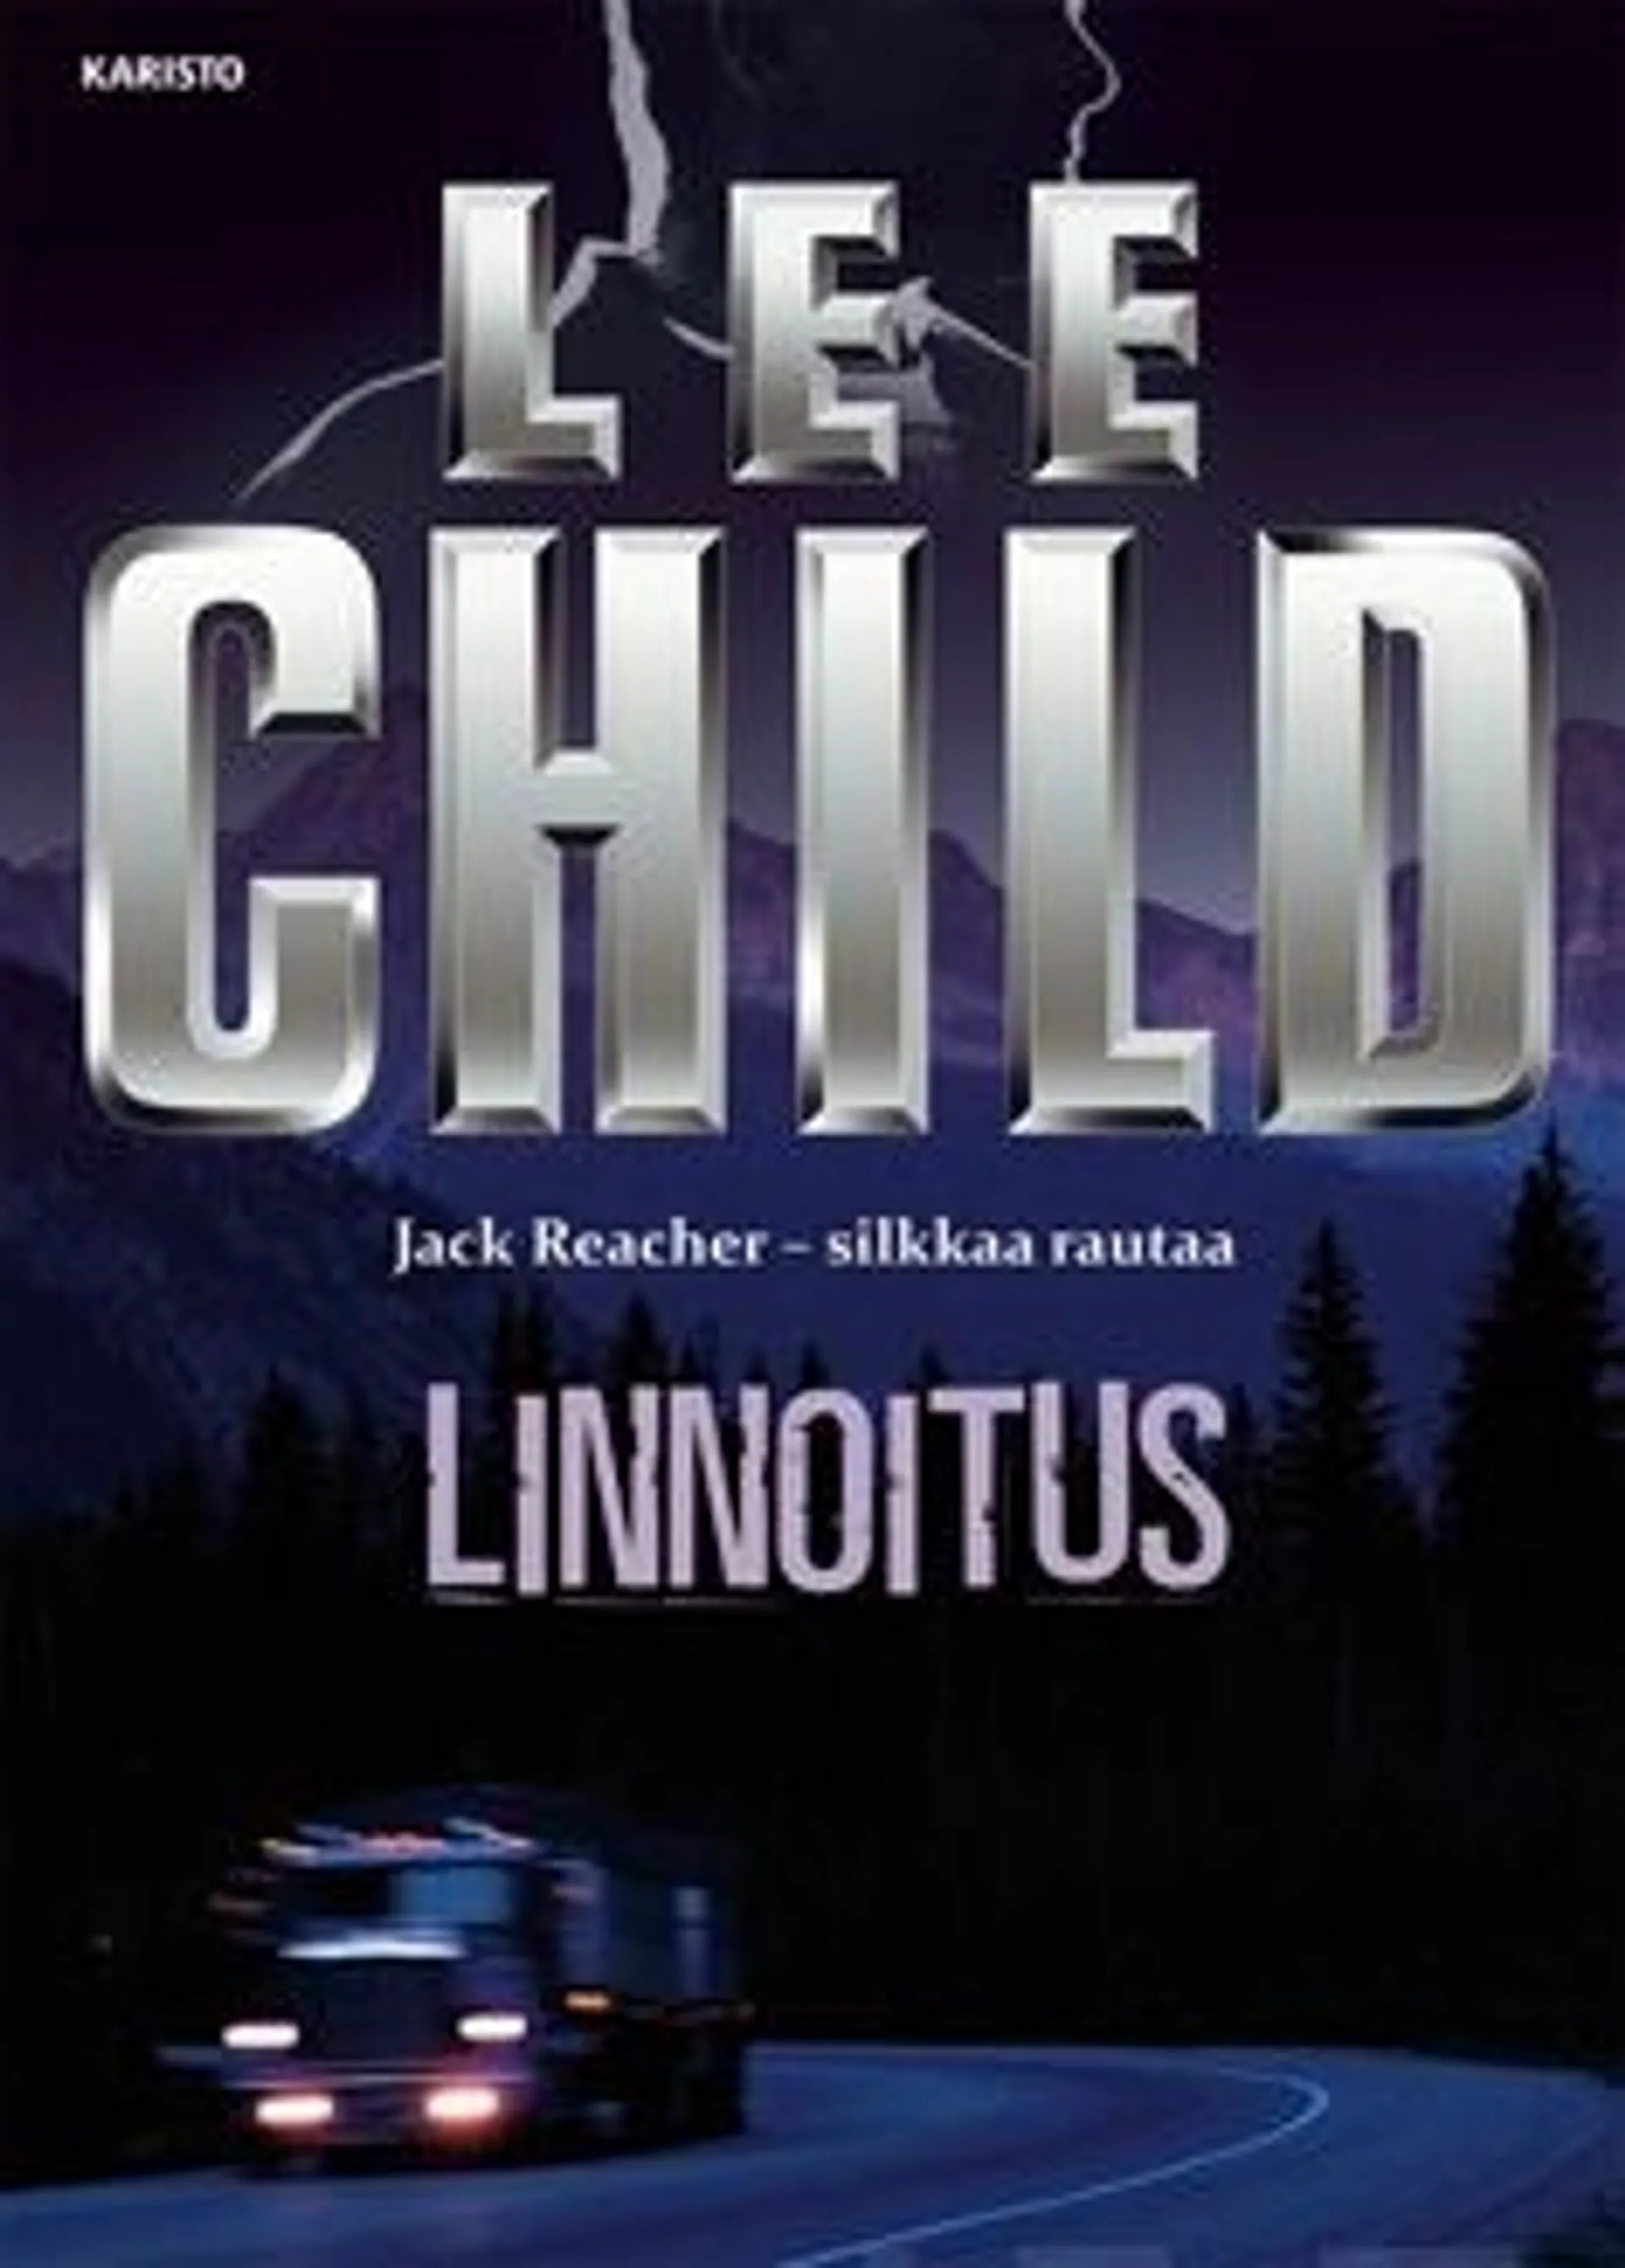 Child, Linnoitus